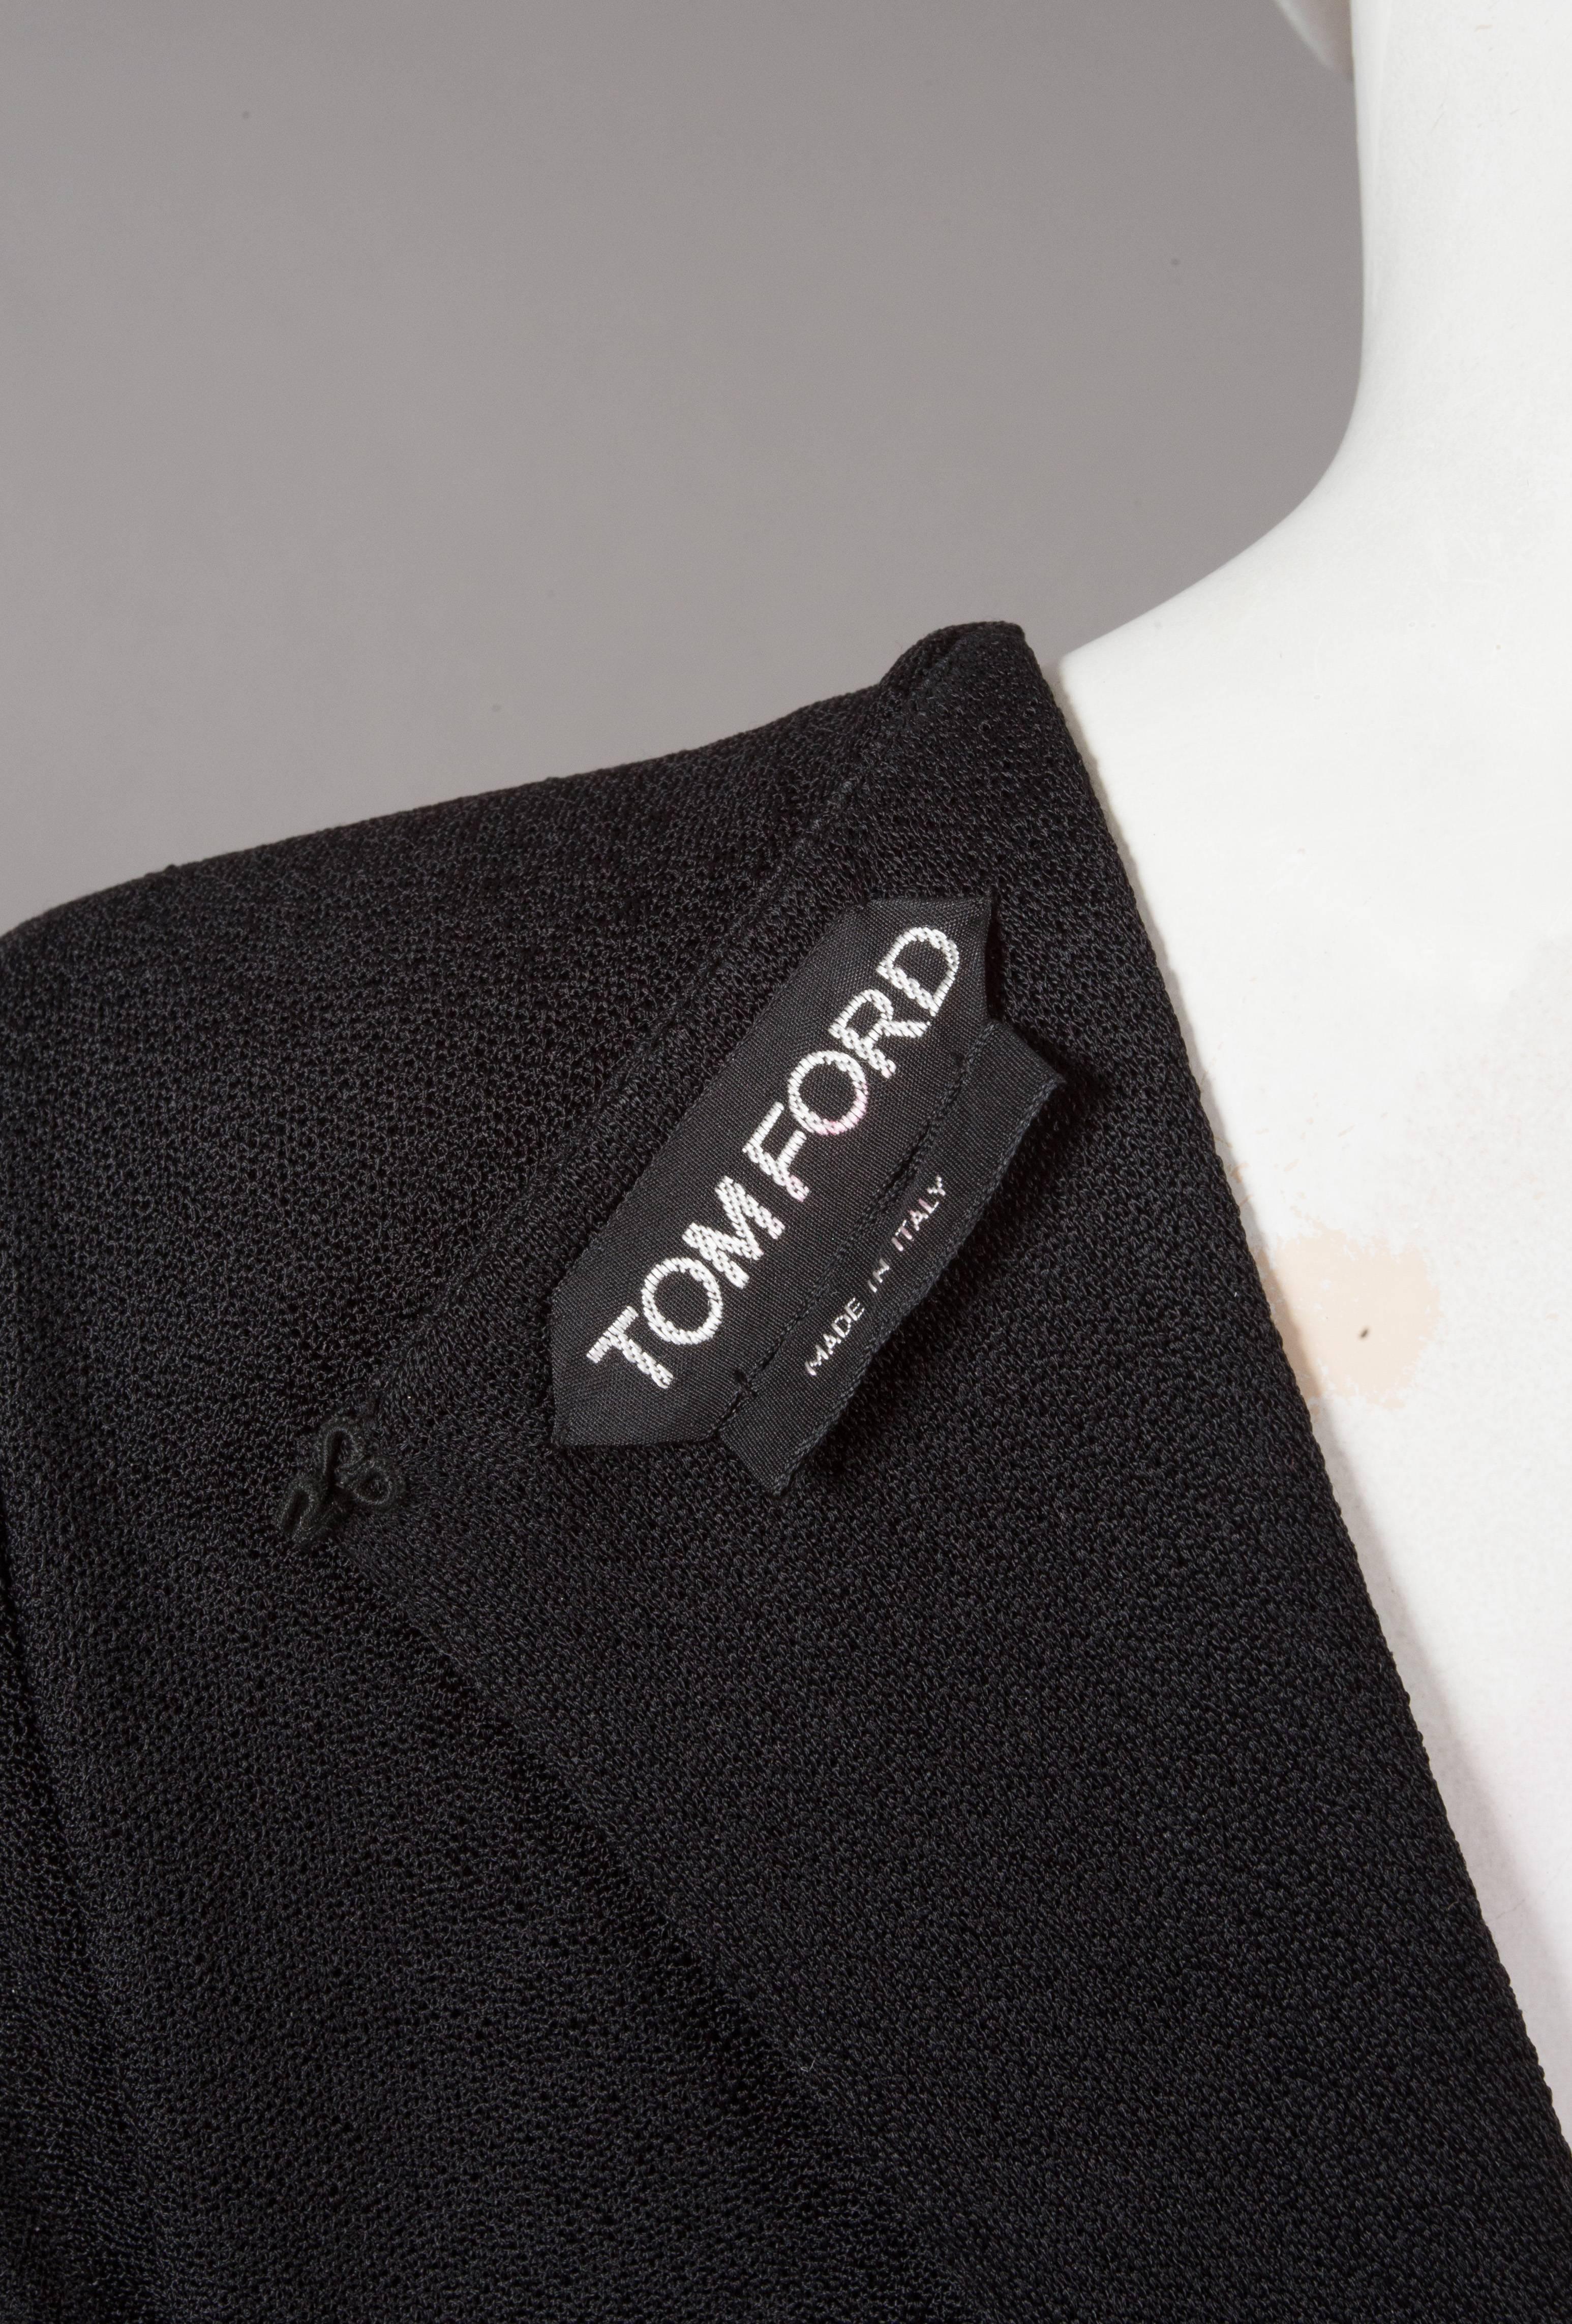 Tom Ford embellished pop art inspired black evening dress, fw 2013 For Sale 2